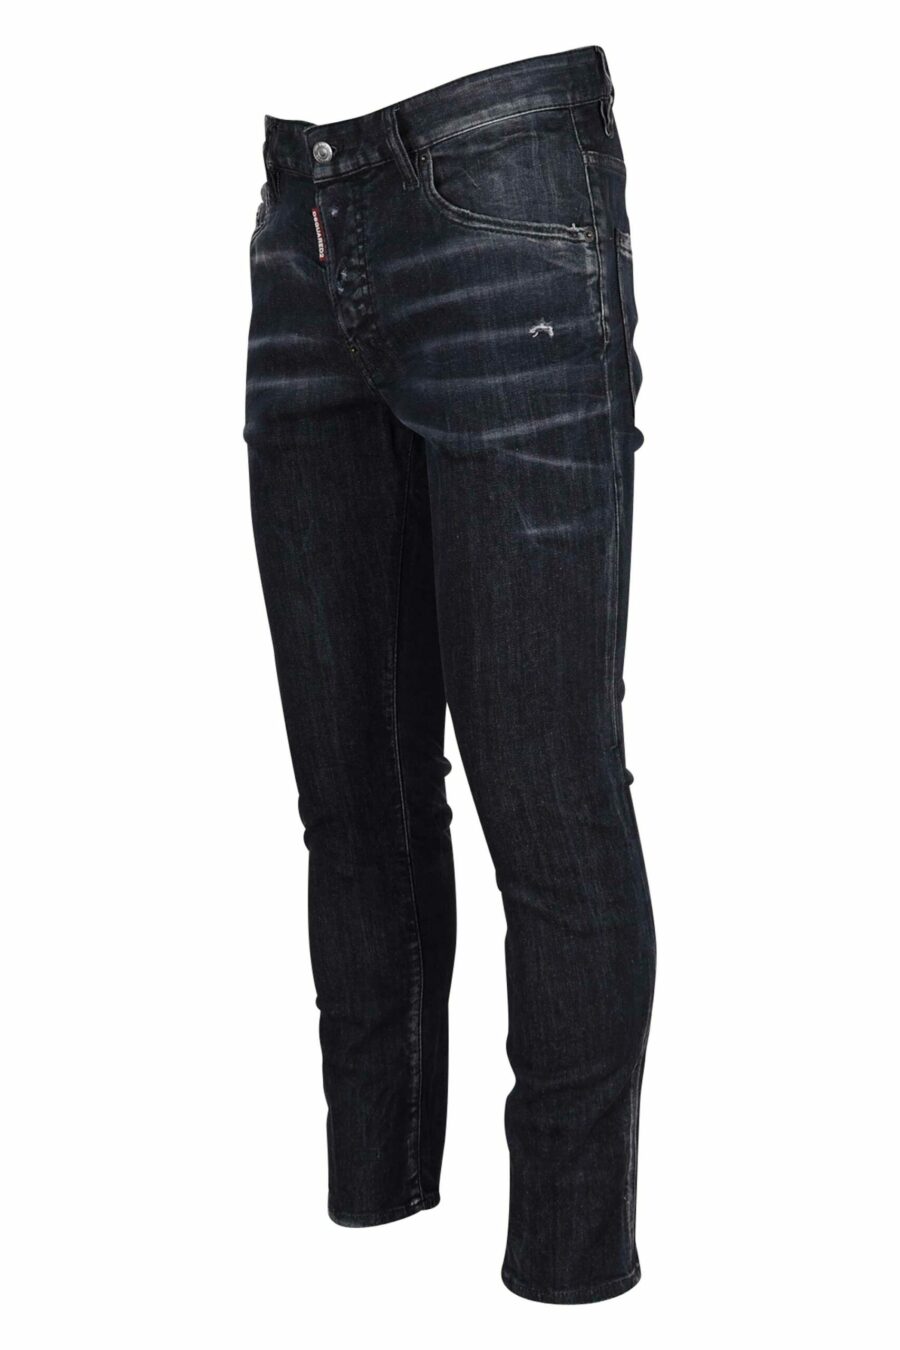 Black semi-worn "skater jean" jeans - 8054148289591 1 scaled